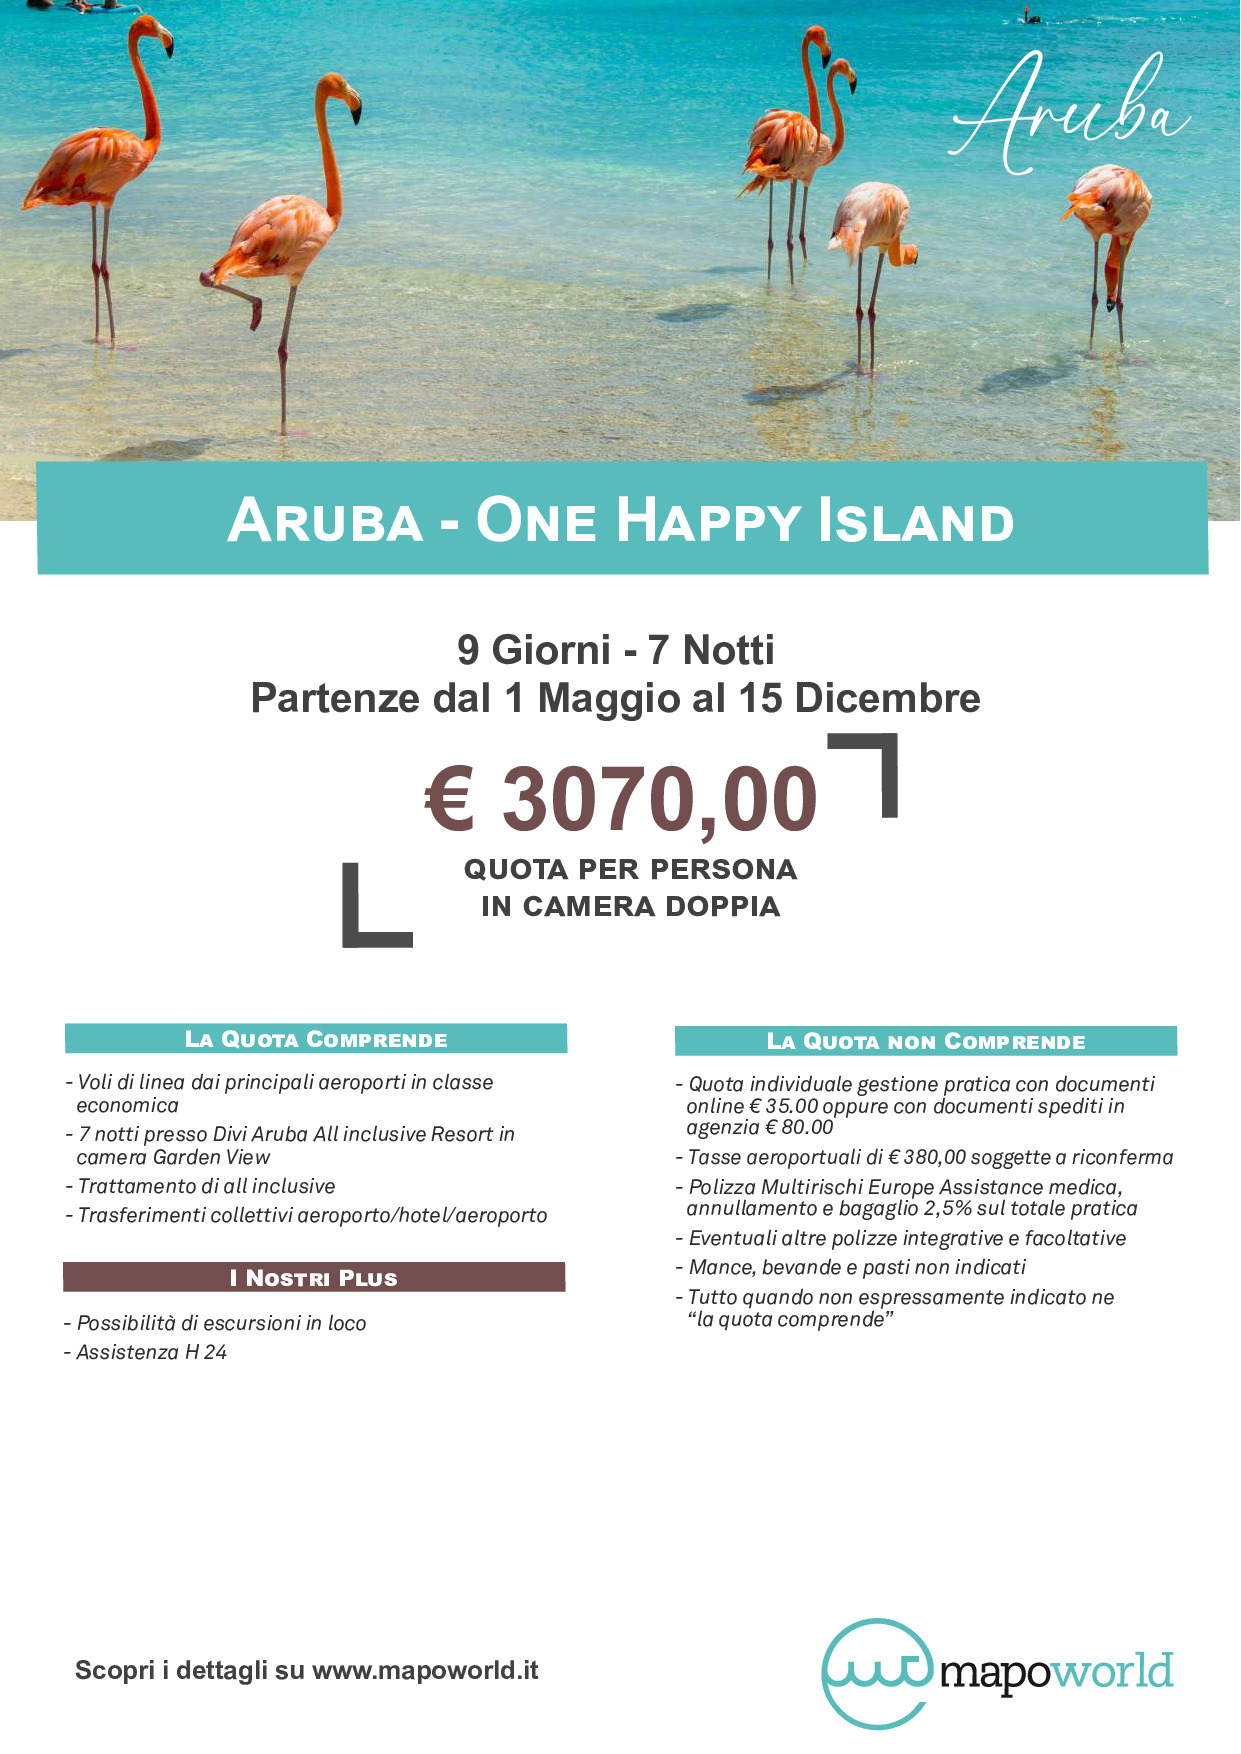 Aruba - One Happy Island - Partenze dal 1 Maggio al 15 Dicembre